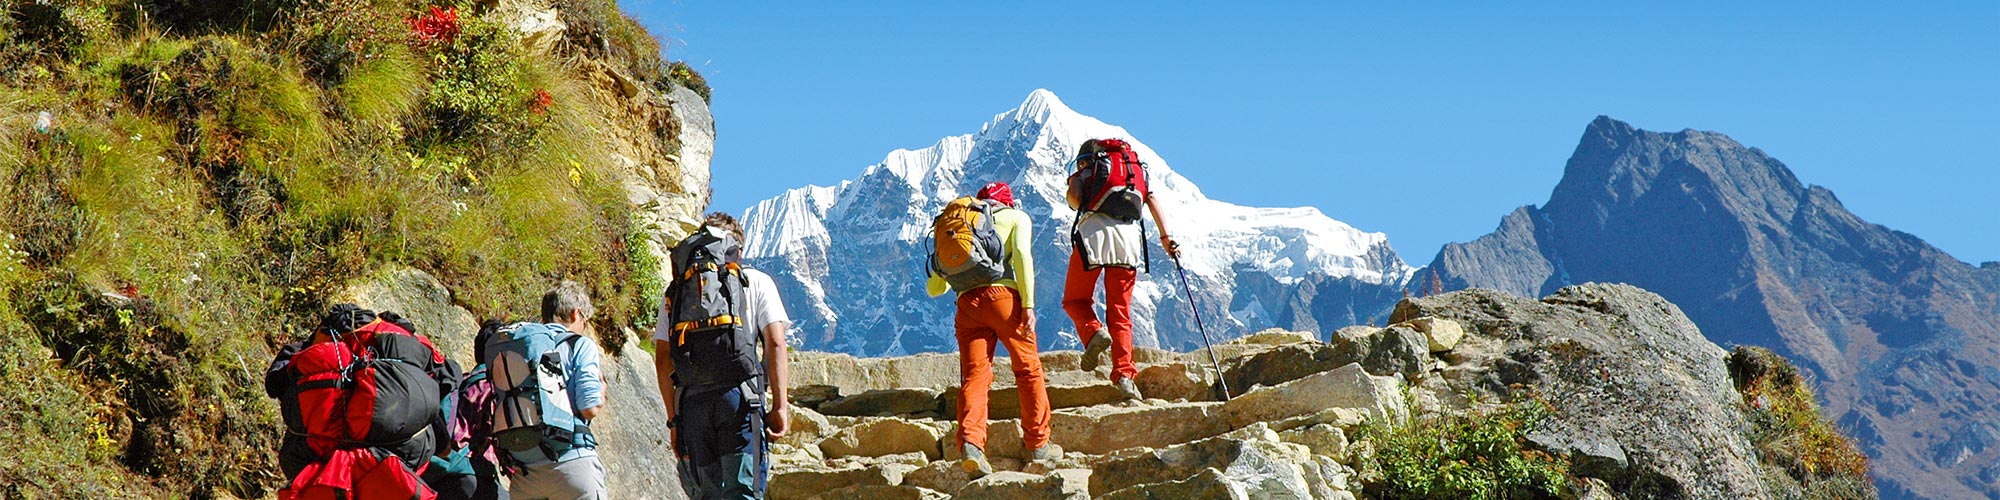 Gokyo-Everest-Trekking: Das Trekking der Superlative